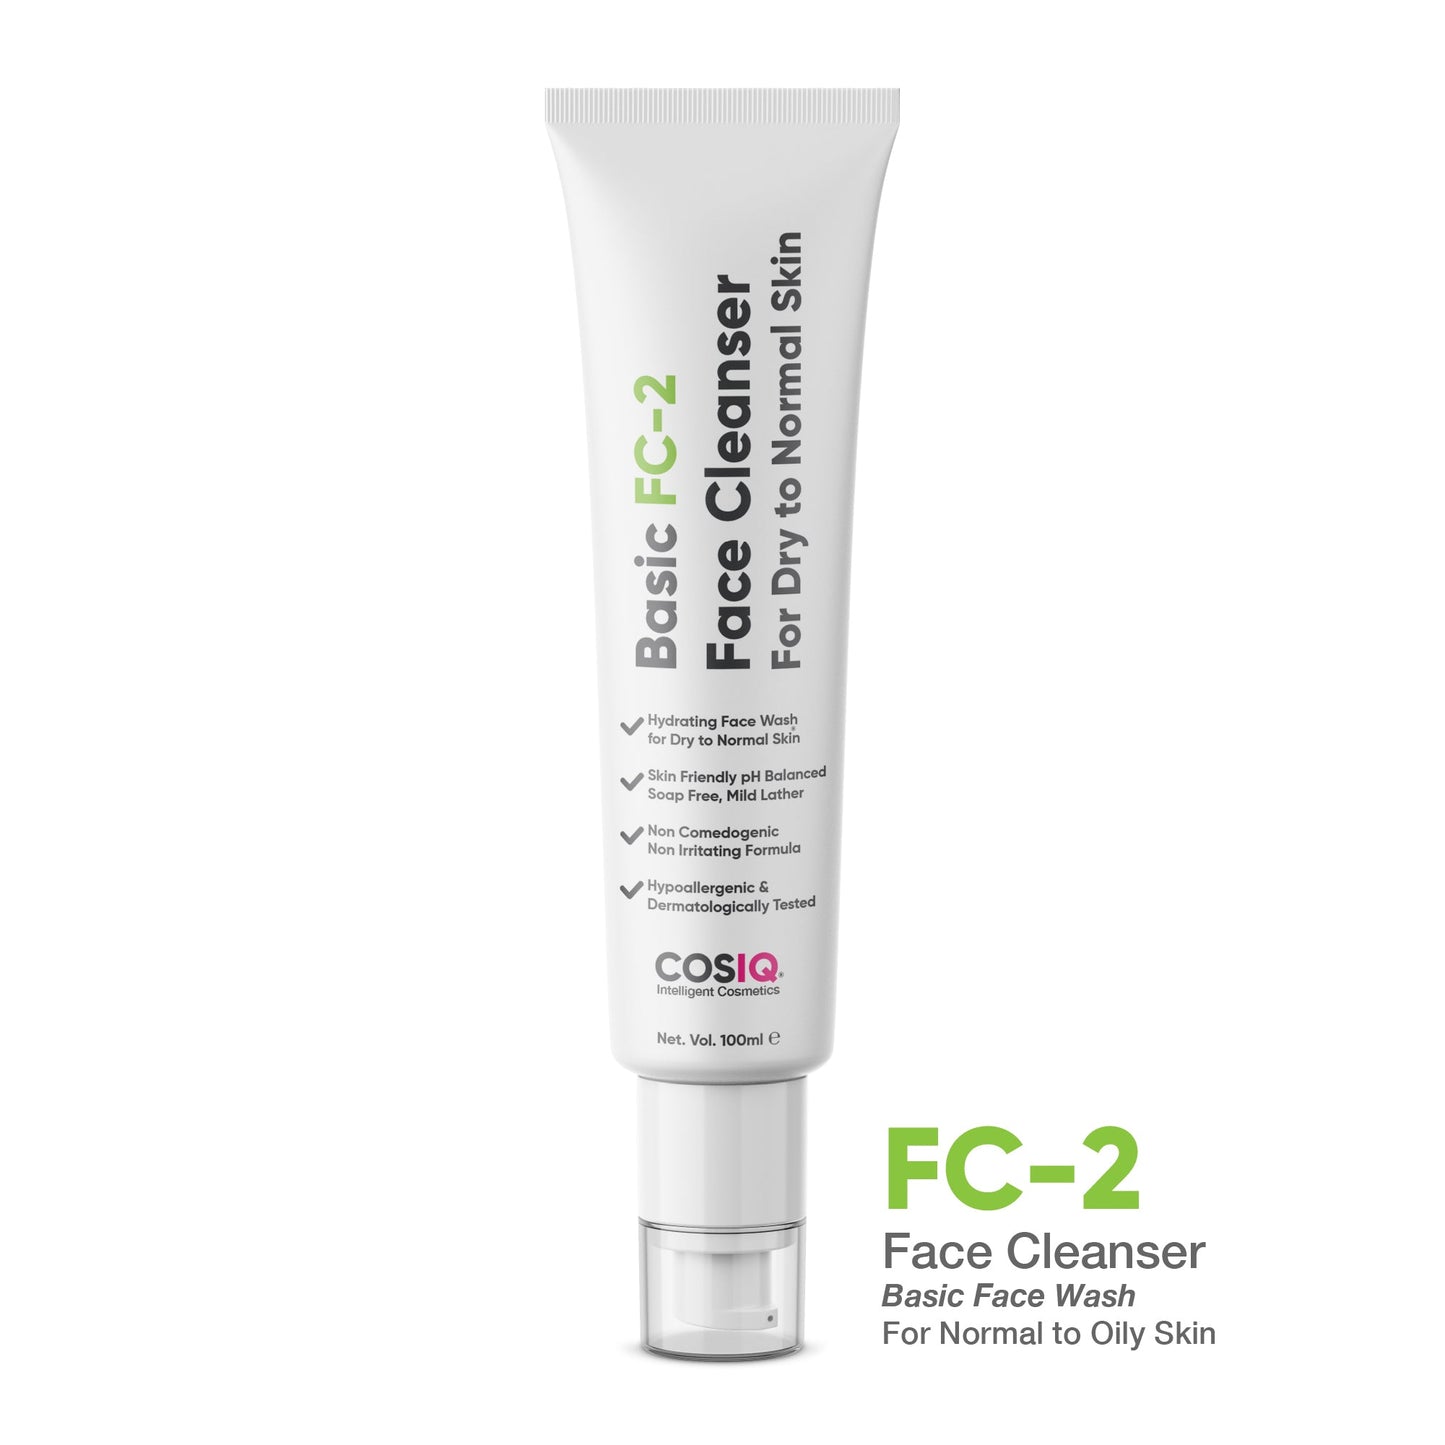 FC-2 Basic Face Cleanser for Dry Skin, 100ml - CosIQ